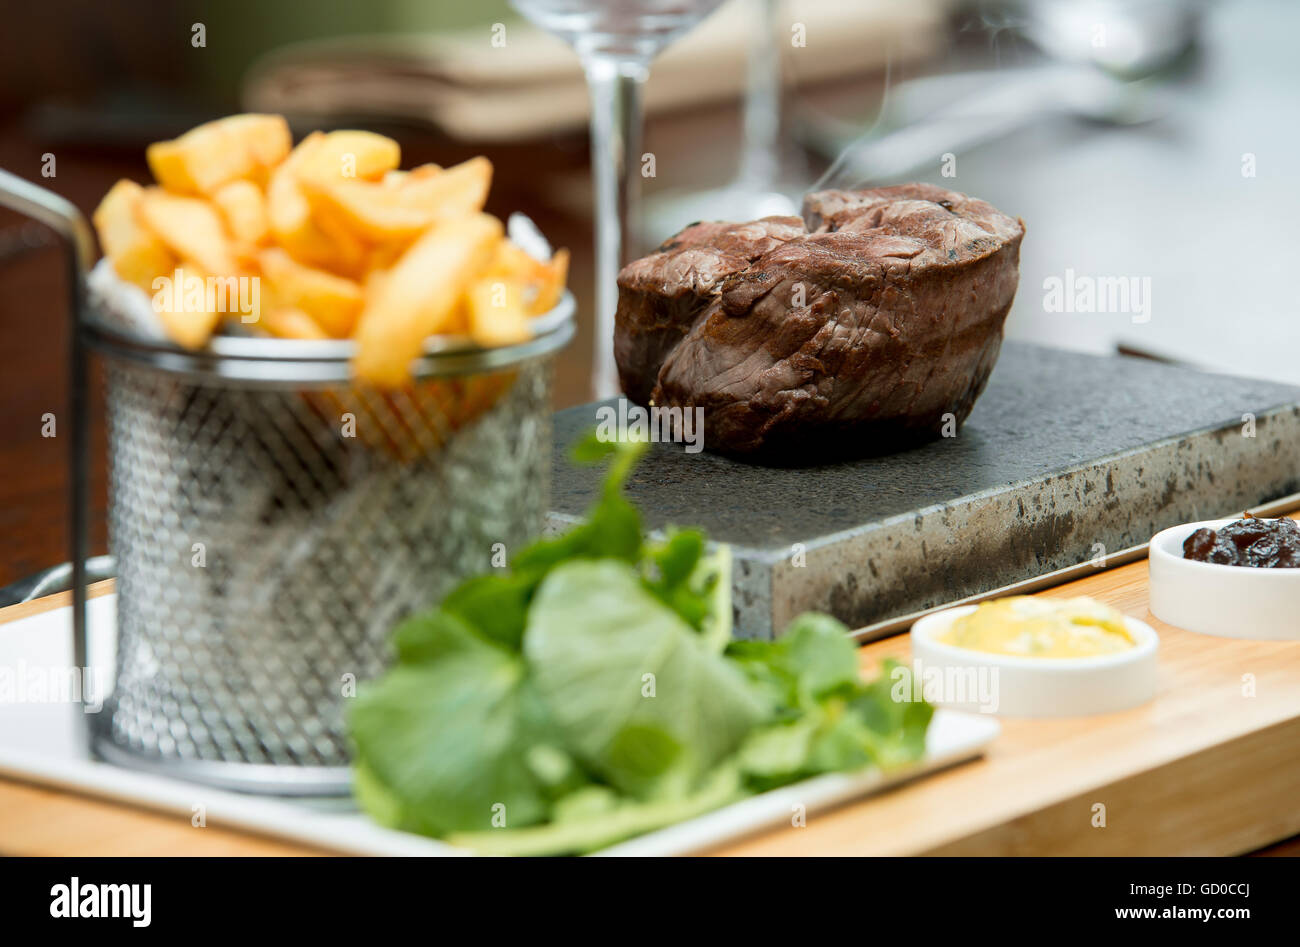 Filetsteak kochen bis zum Kunden Geschmack auf einem heißen Stein serviert mit Saucen, Pommes Frites und Salat. Stockfoto